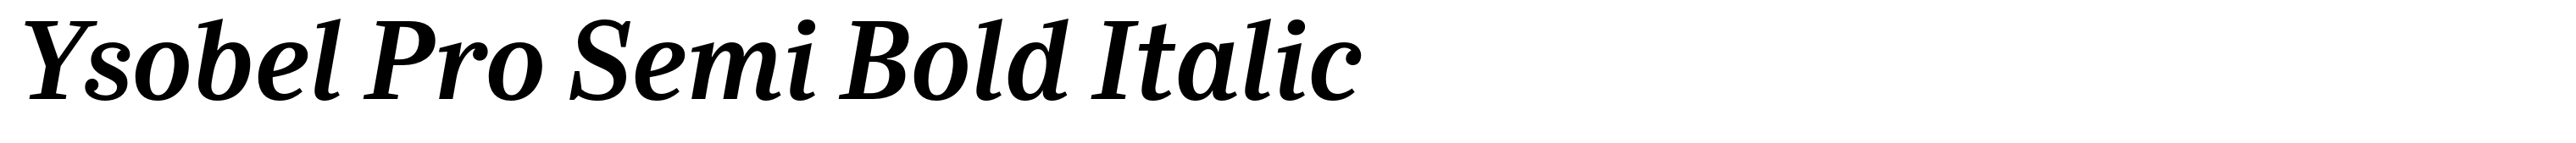 Ysobel Pro Semi Bold Italic